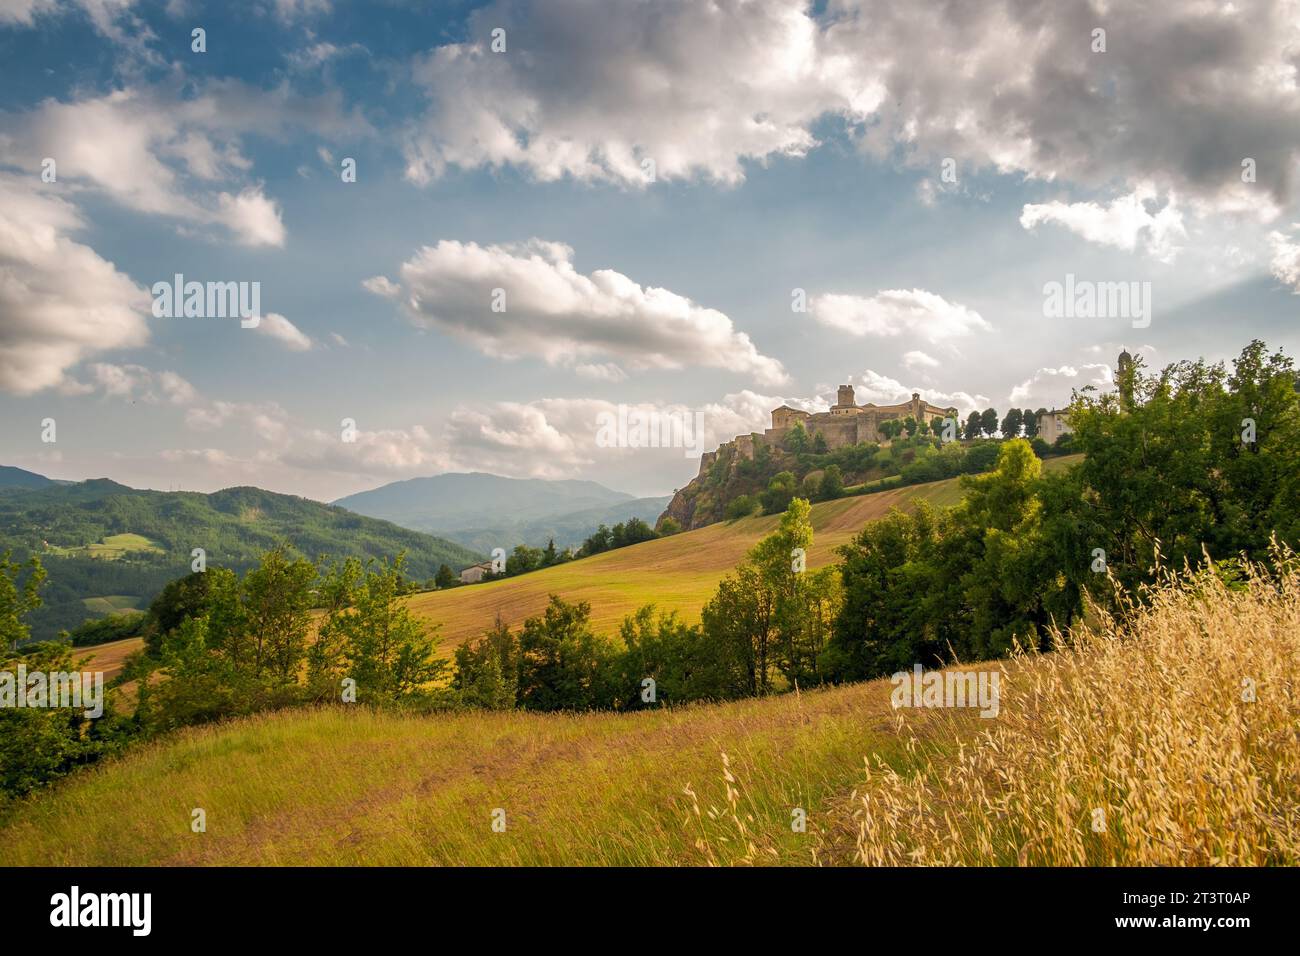 Paysage rural avec le château de Bardi. Province de Parme, Emilie et Romagne, Italie. Banque D'Images